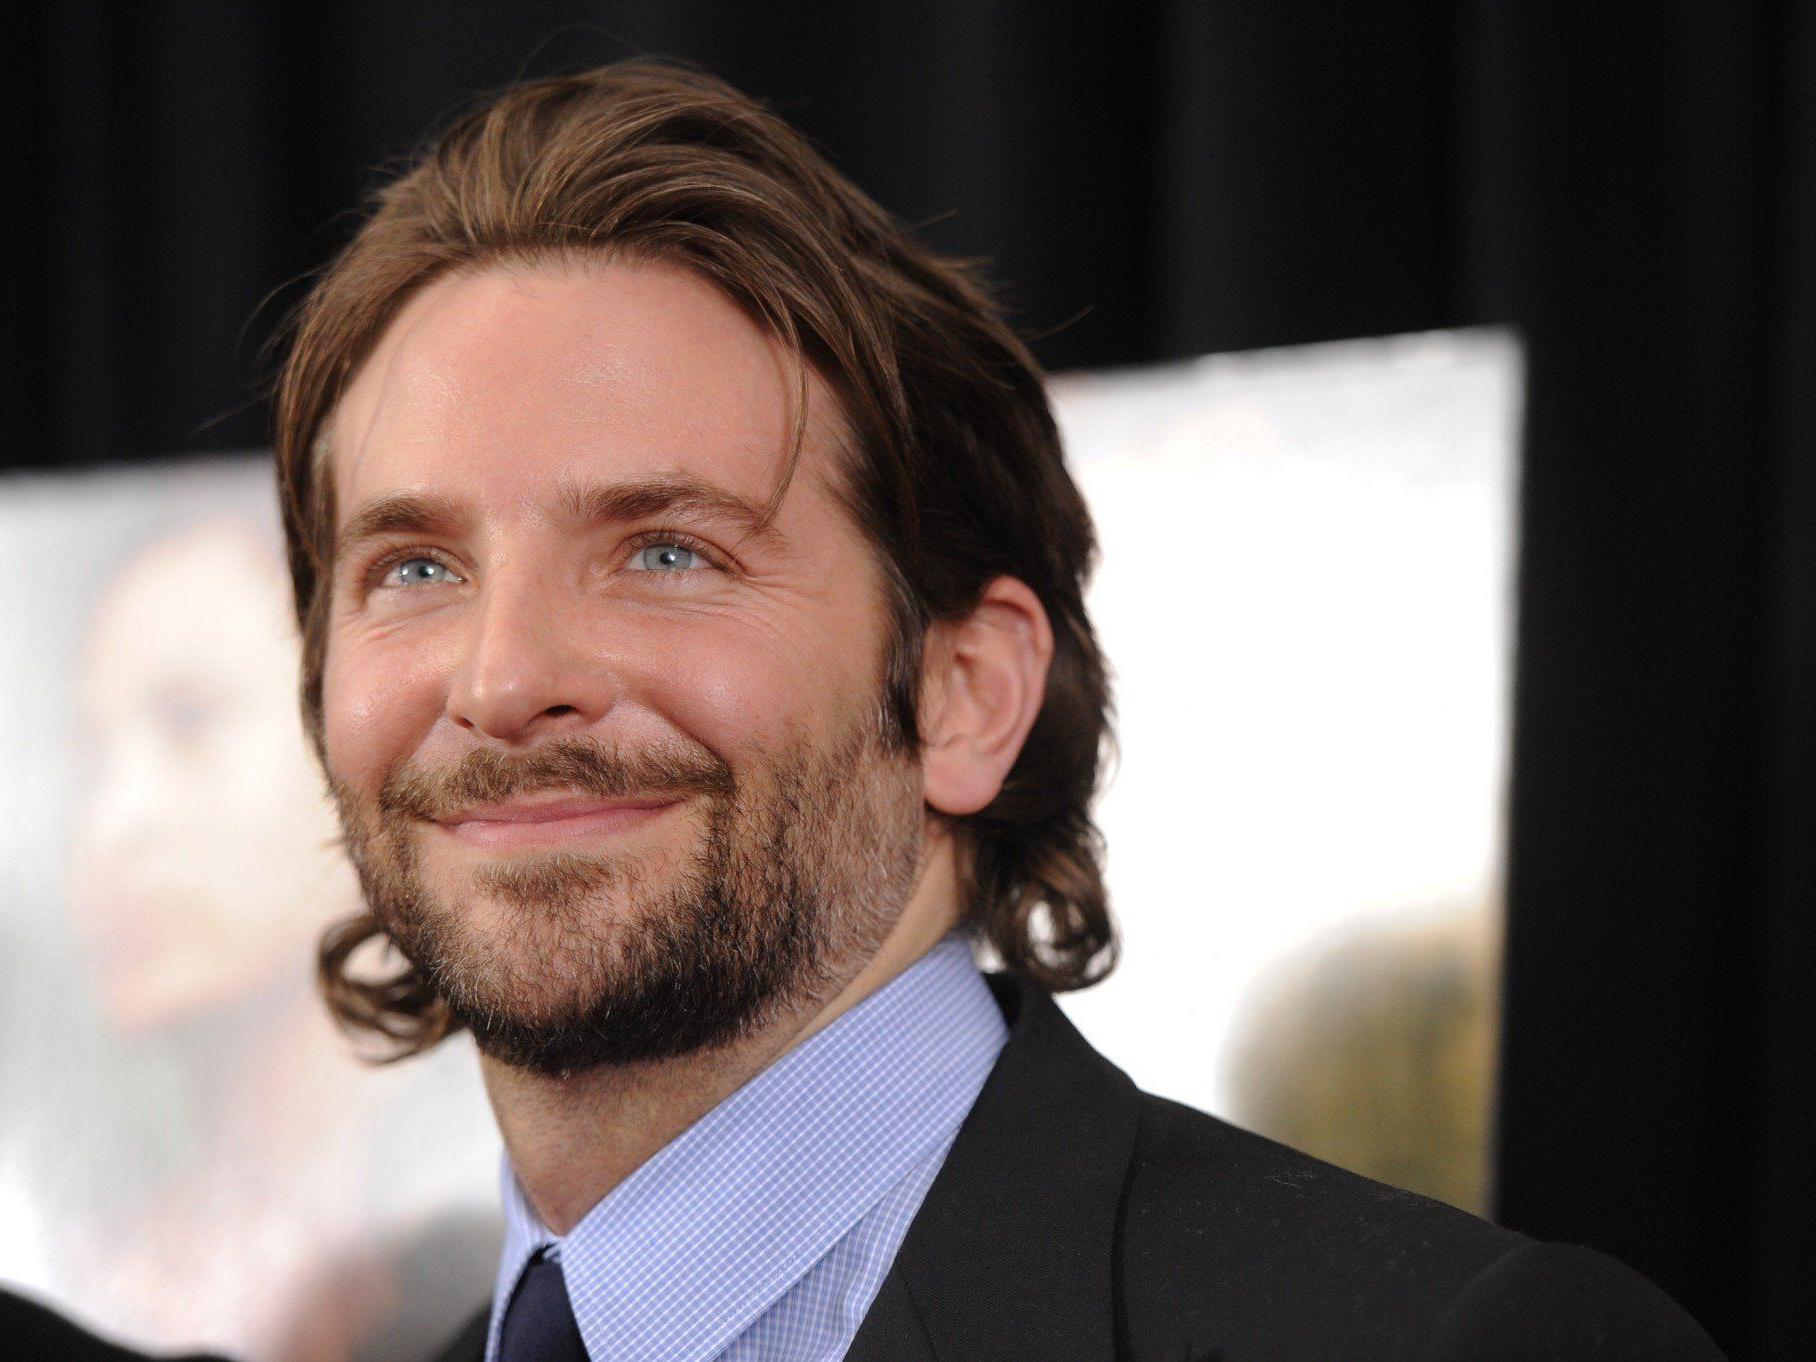 Bradley Cooper steigt bei Film "Jane Got a Gun" aus